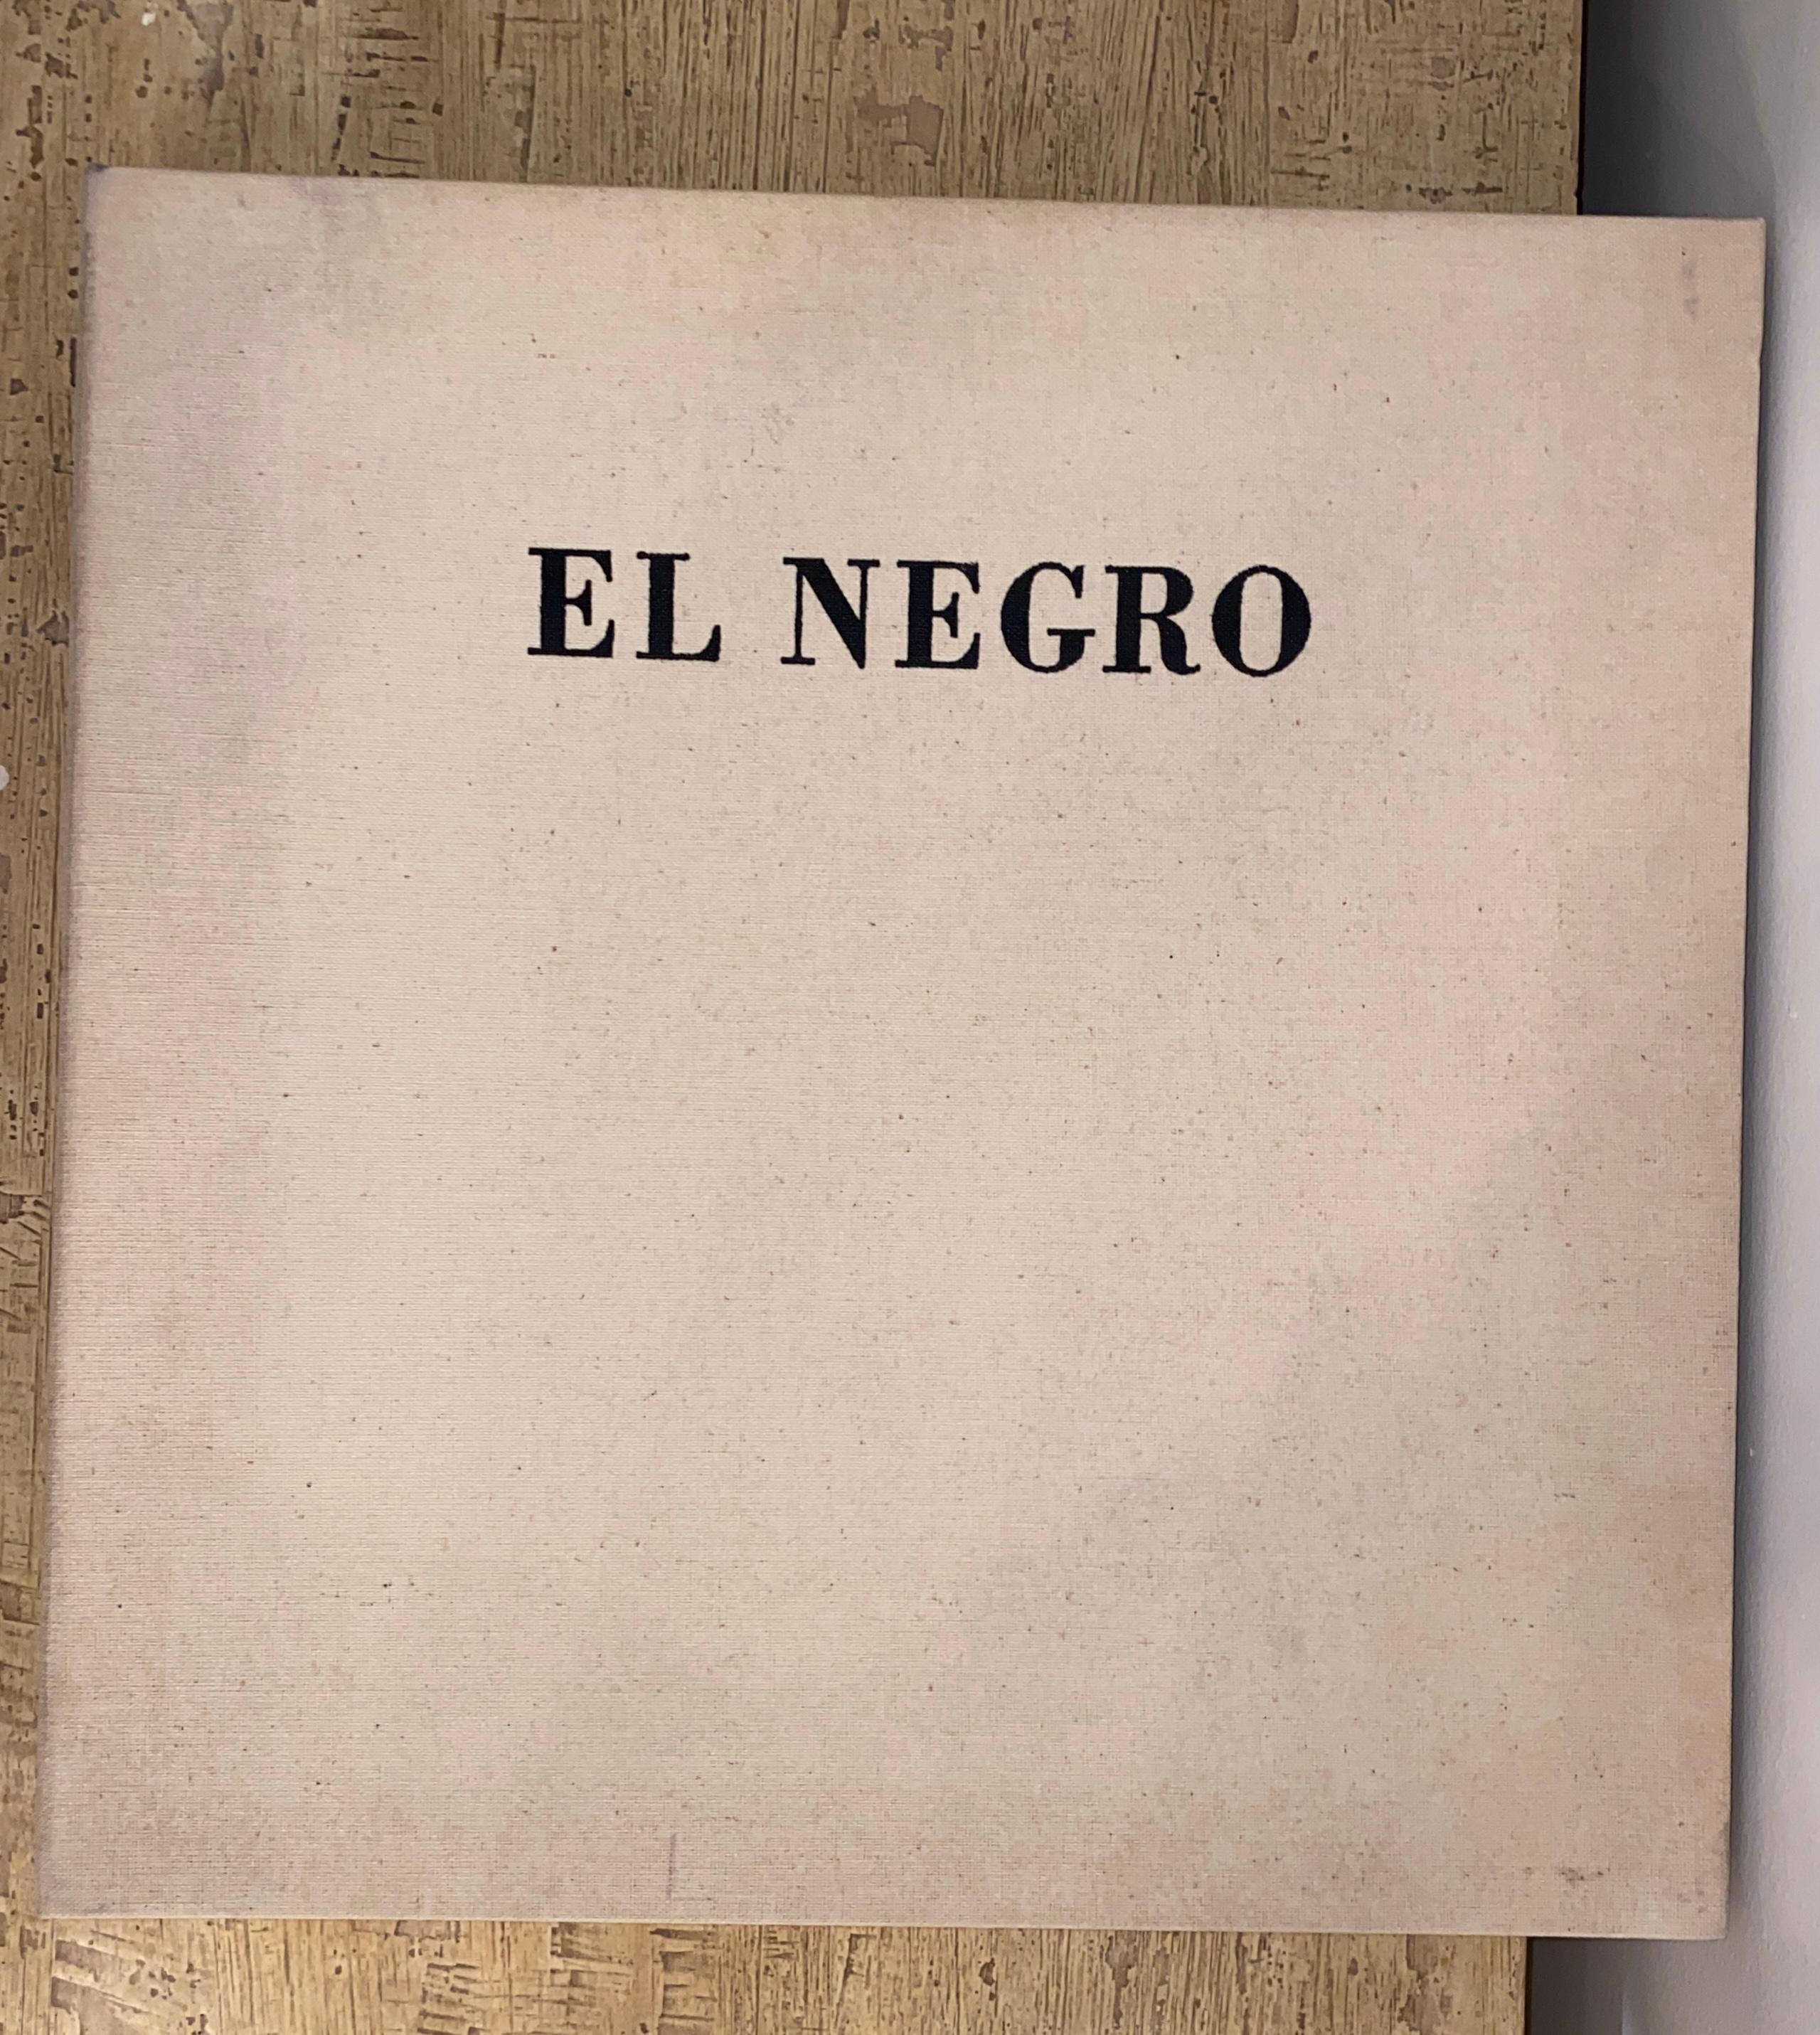 North American El Negro - Robert Motherwell (1915-1991) For Sale